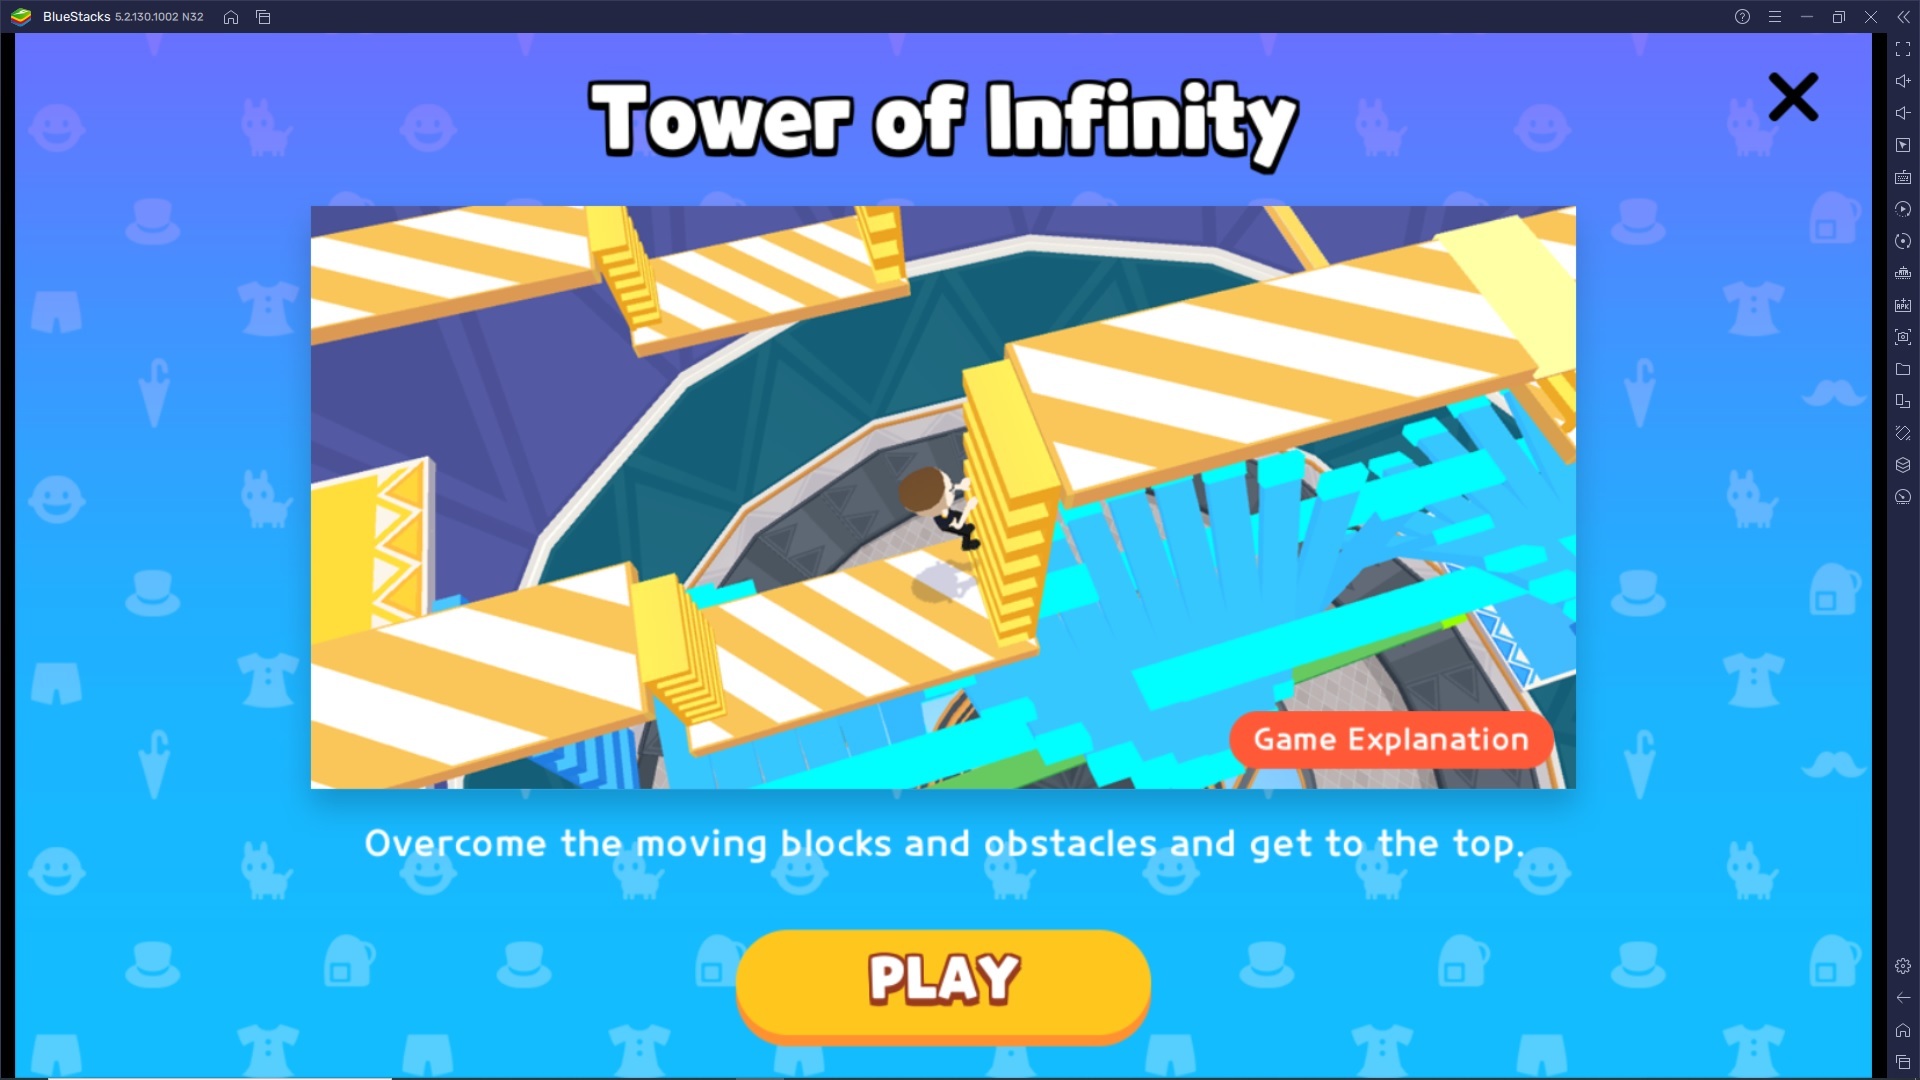 Play Together - Come affrontare la difficile sfida platform della Tower of Infinity